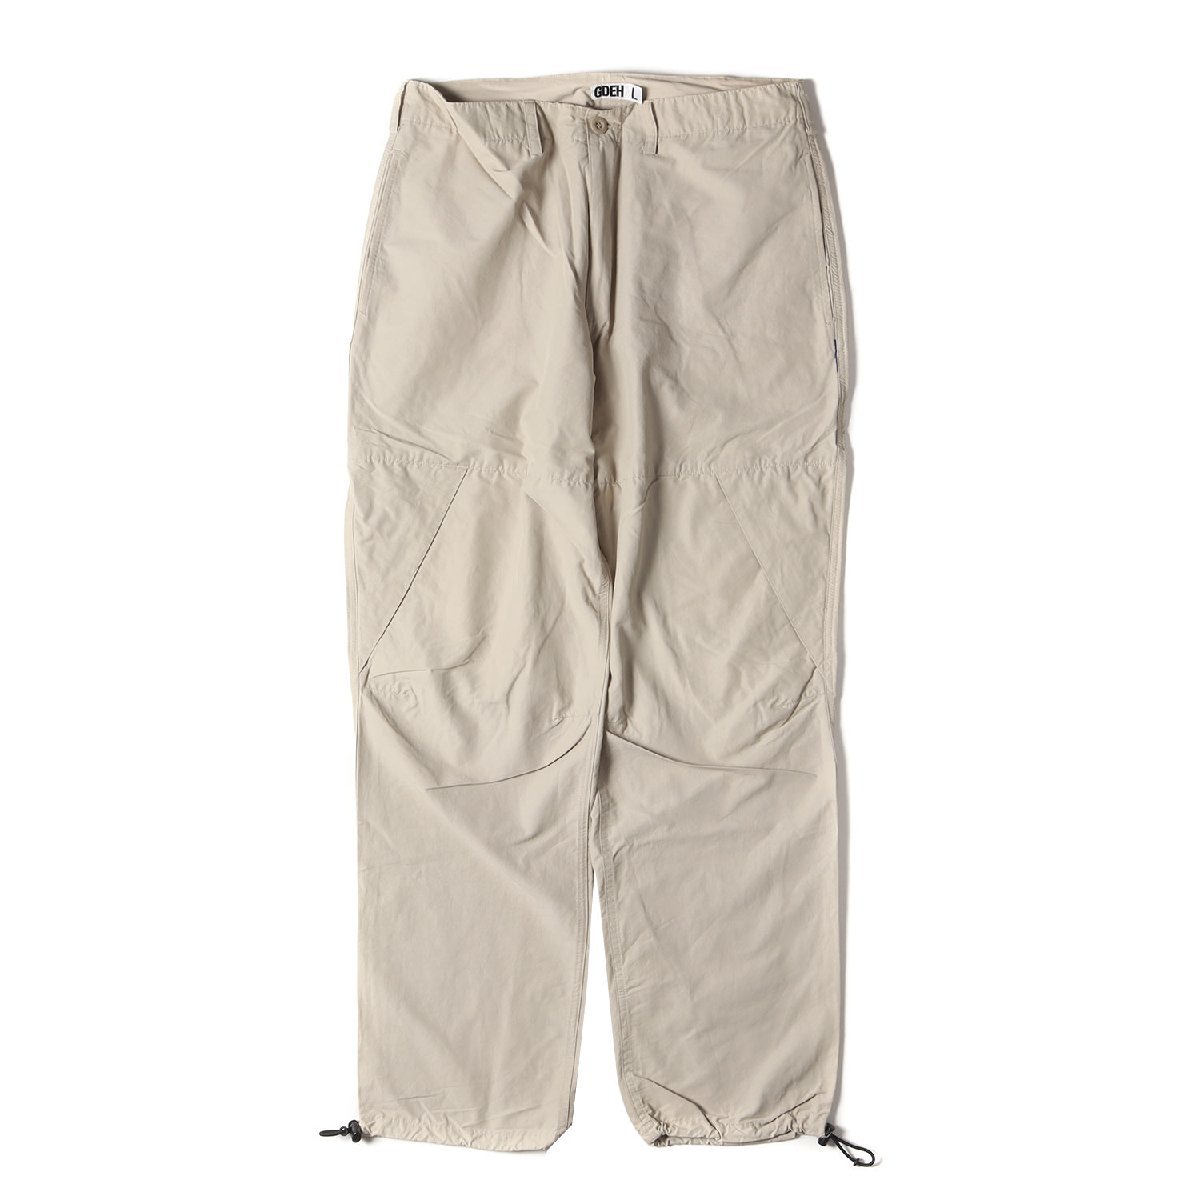 GOOD ENOUGH グッドイナフ パンツ サイズ:L 00s 60/40クロス ベンチレーション パンツ ベージュ ボトムス ズボン ストリート ブランド